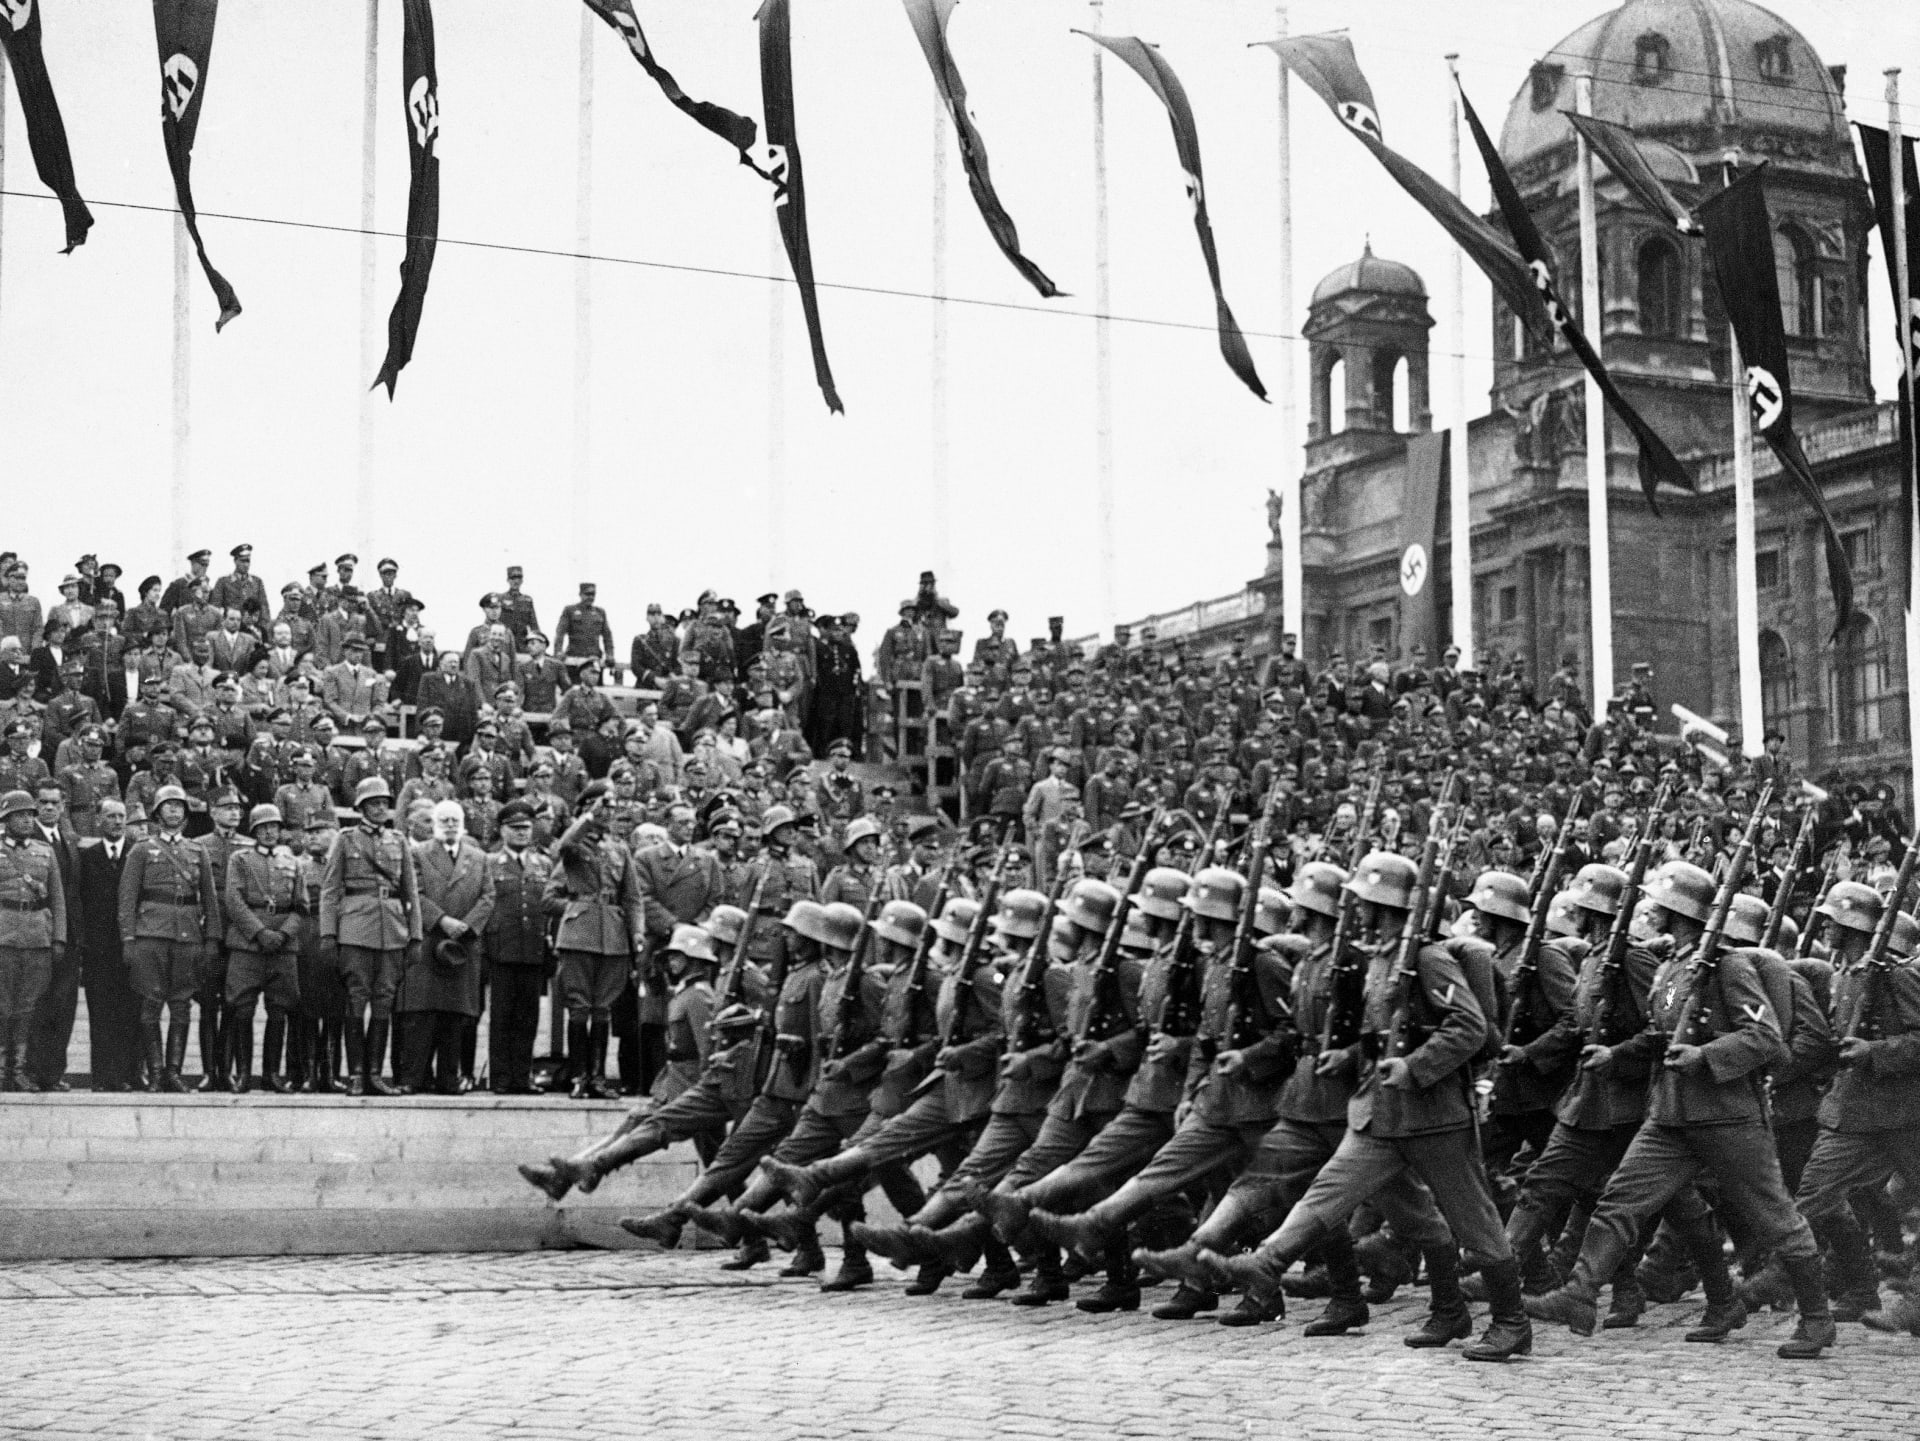 Po anšlusu, tedy připojení Rakouska k nacistickému Německu, následovalo roku 1938 odstoupení Sudet, v březnu 1939 pak okupace Československa.